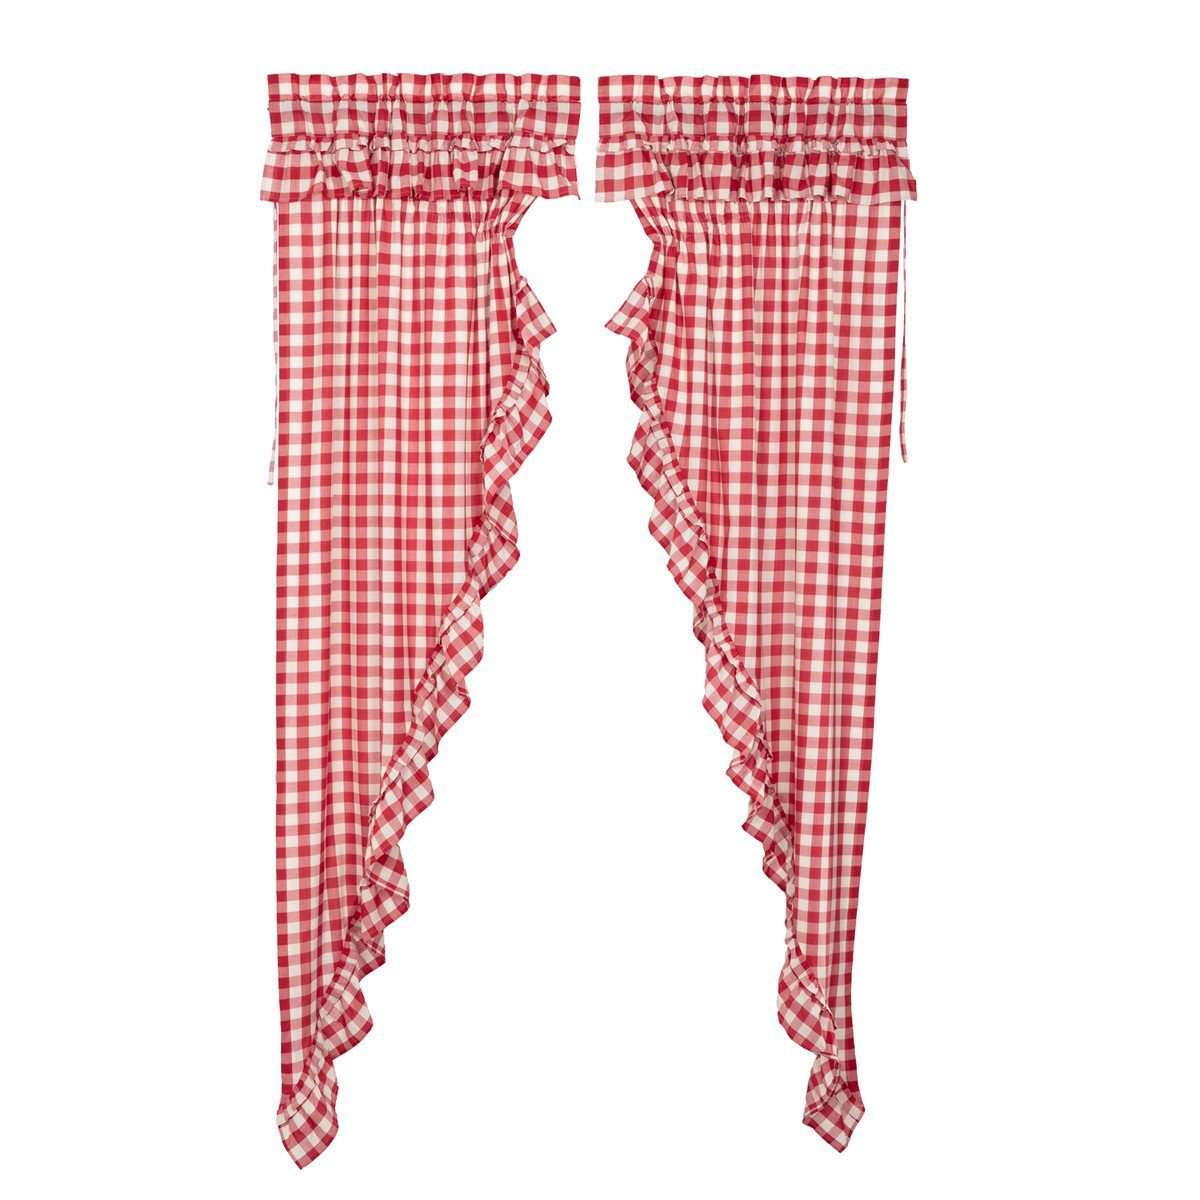 Annie Buffalo Red Check Ruffled Prairie Long Panel Curtain Set of 2 - The Fox Decor